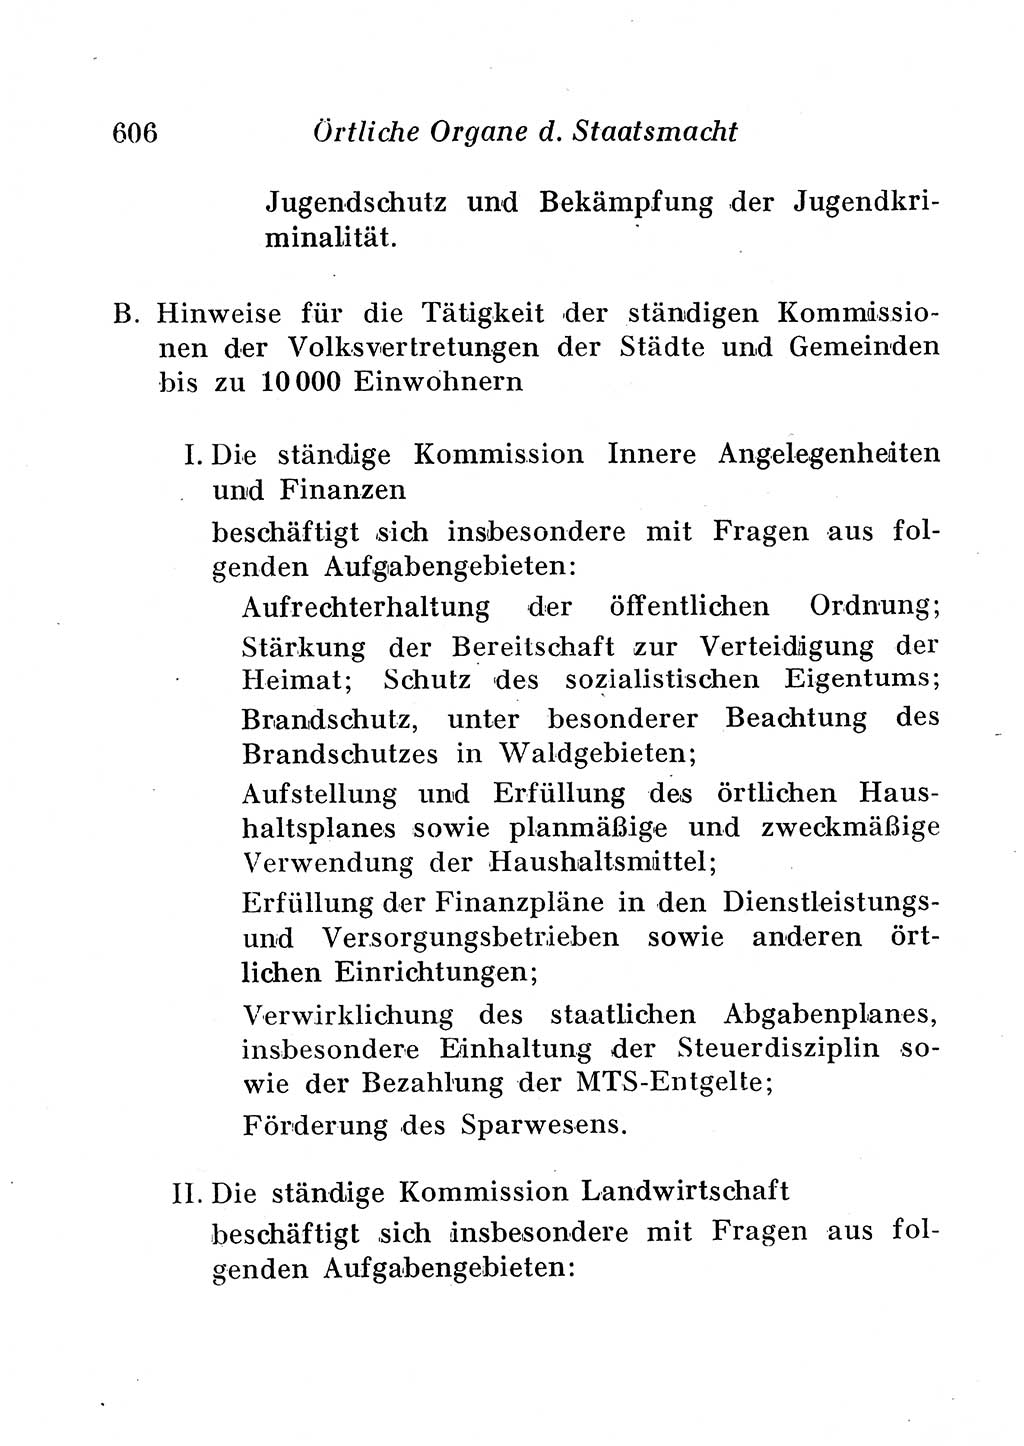 Staats- und verwaltungsrechtliche Gesetze der Deutschen Demokratischen Republik (DDR) 1958, Seite 606 (StVerwR Ges. DDR 1958, S. 606)